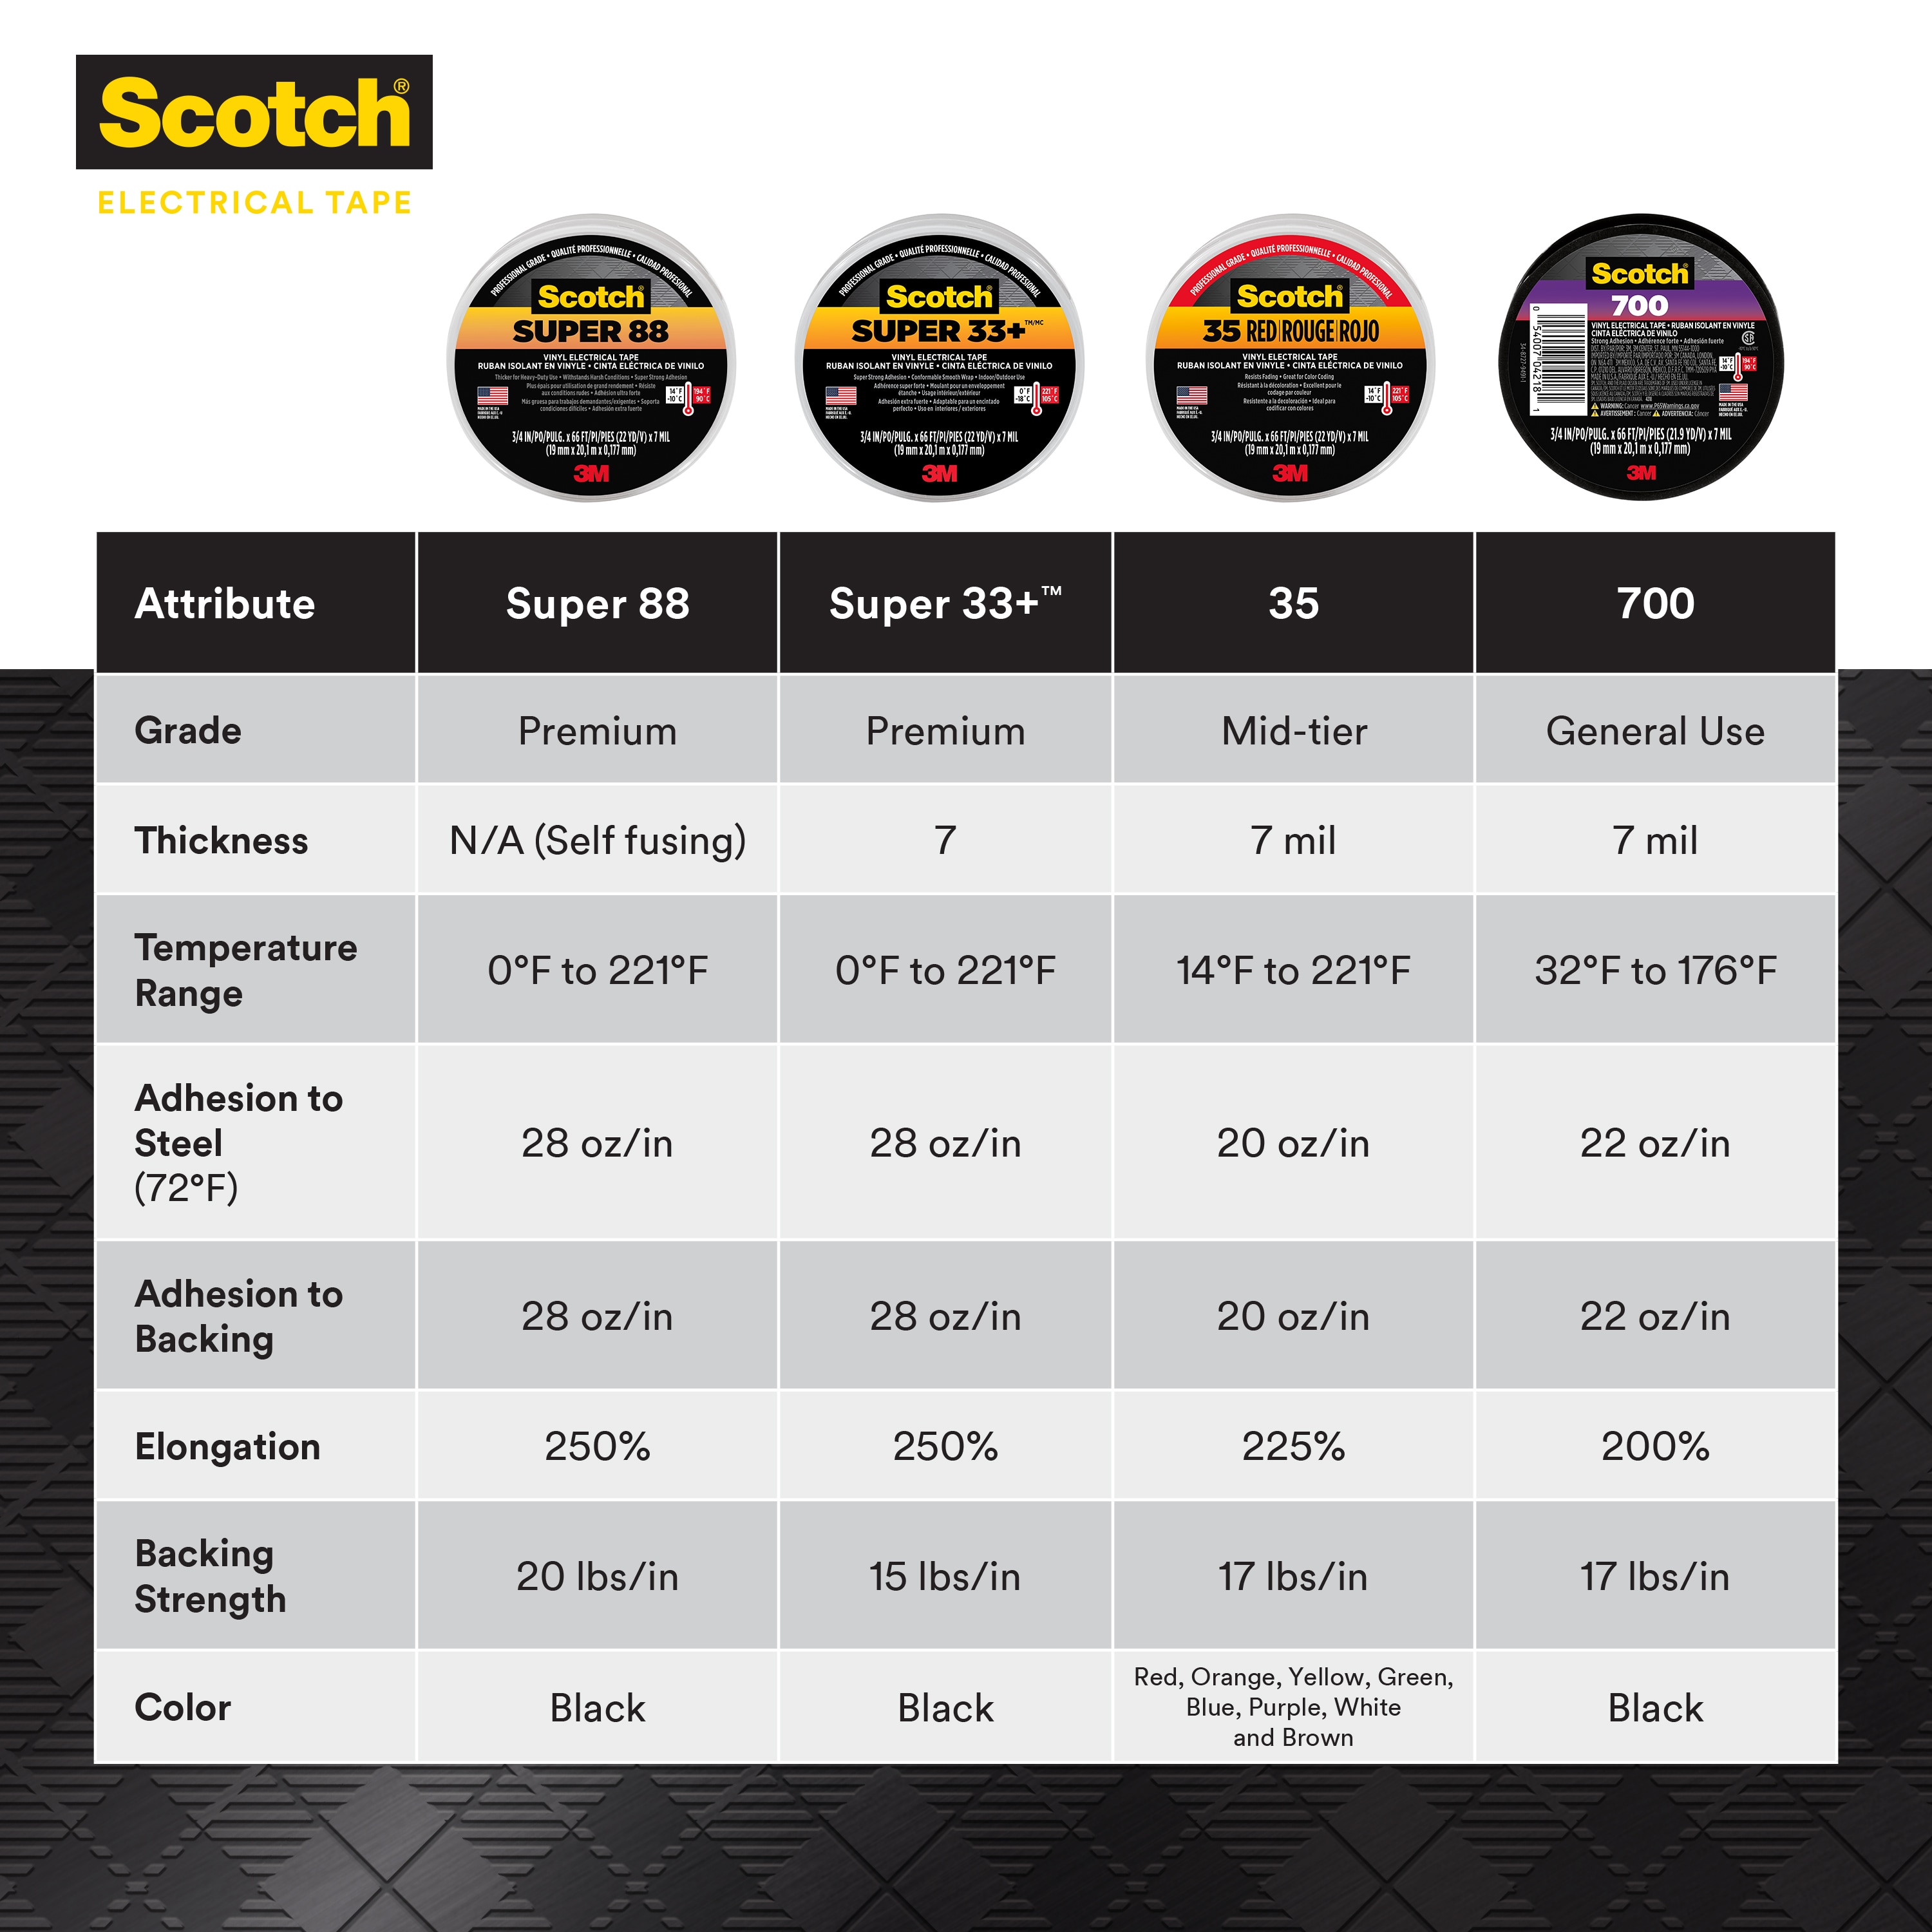 3M Scotch Super 33+ Black PVC Electrical Tape, 19mm x 6m - RS